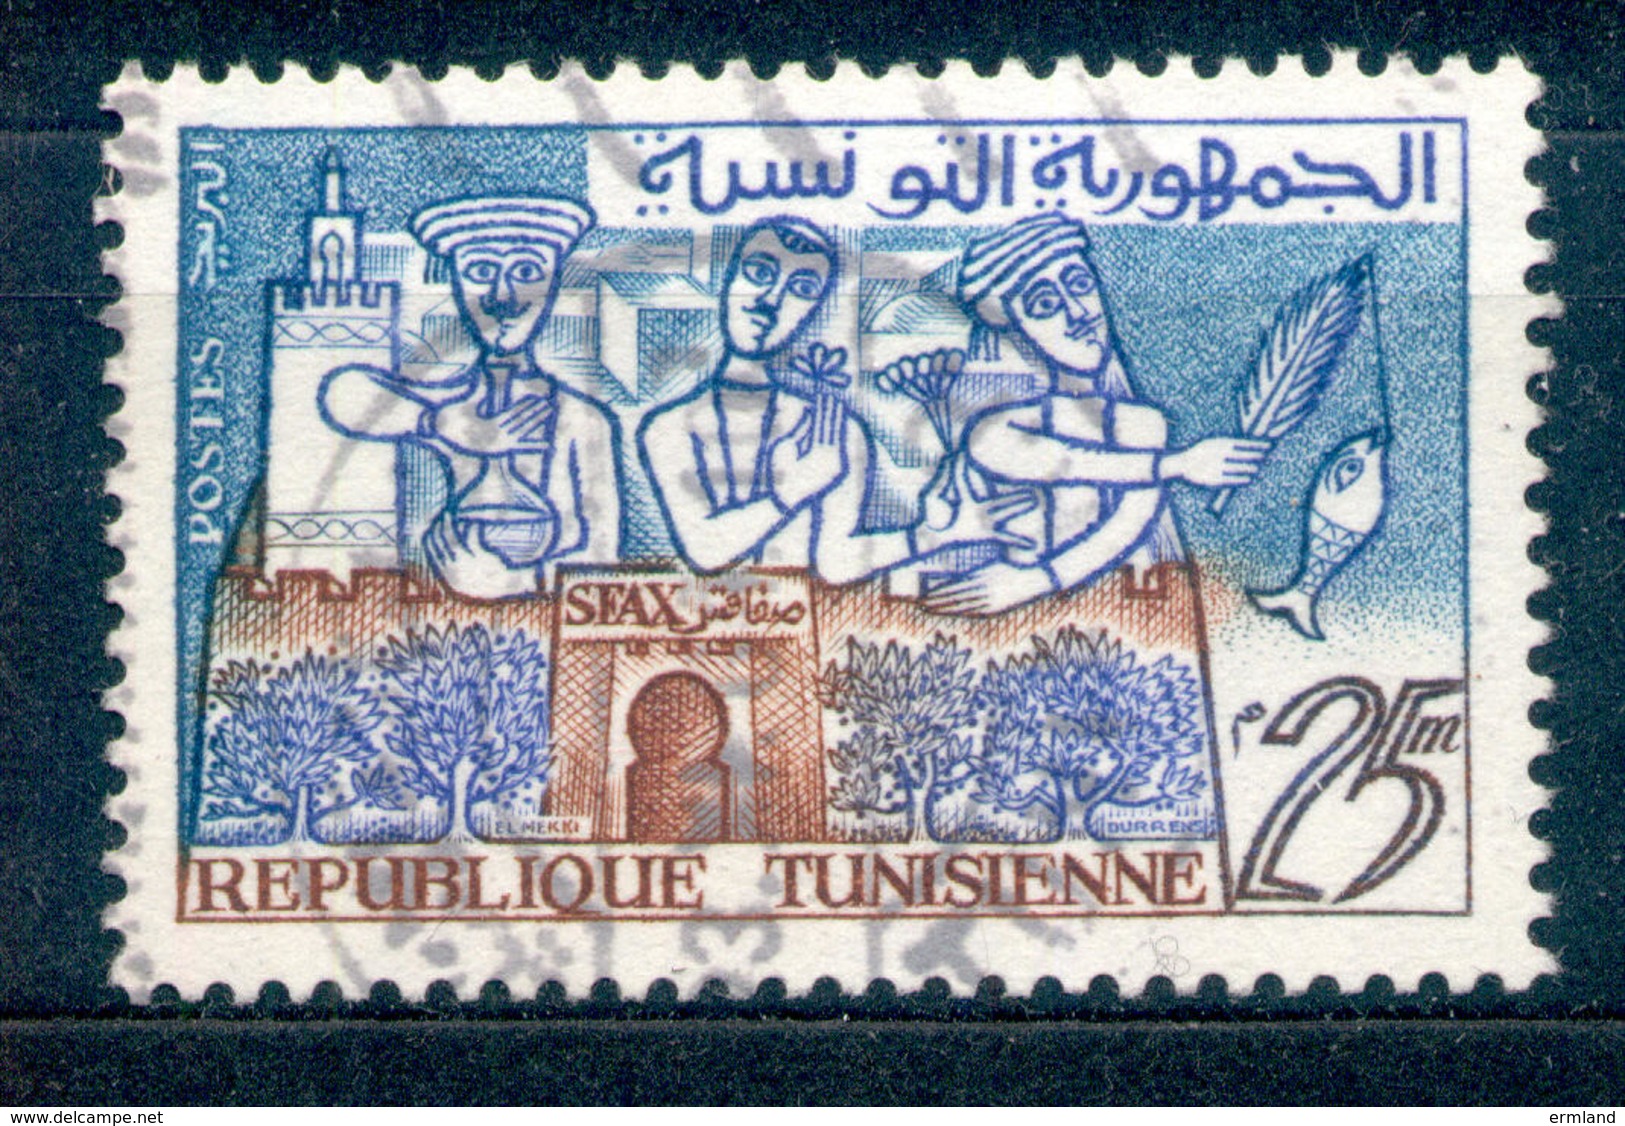 Tunesien  - Republique Tunisienne 1959/1961 - Michel Nr. 530 O - Tunesien (1956-...)